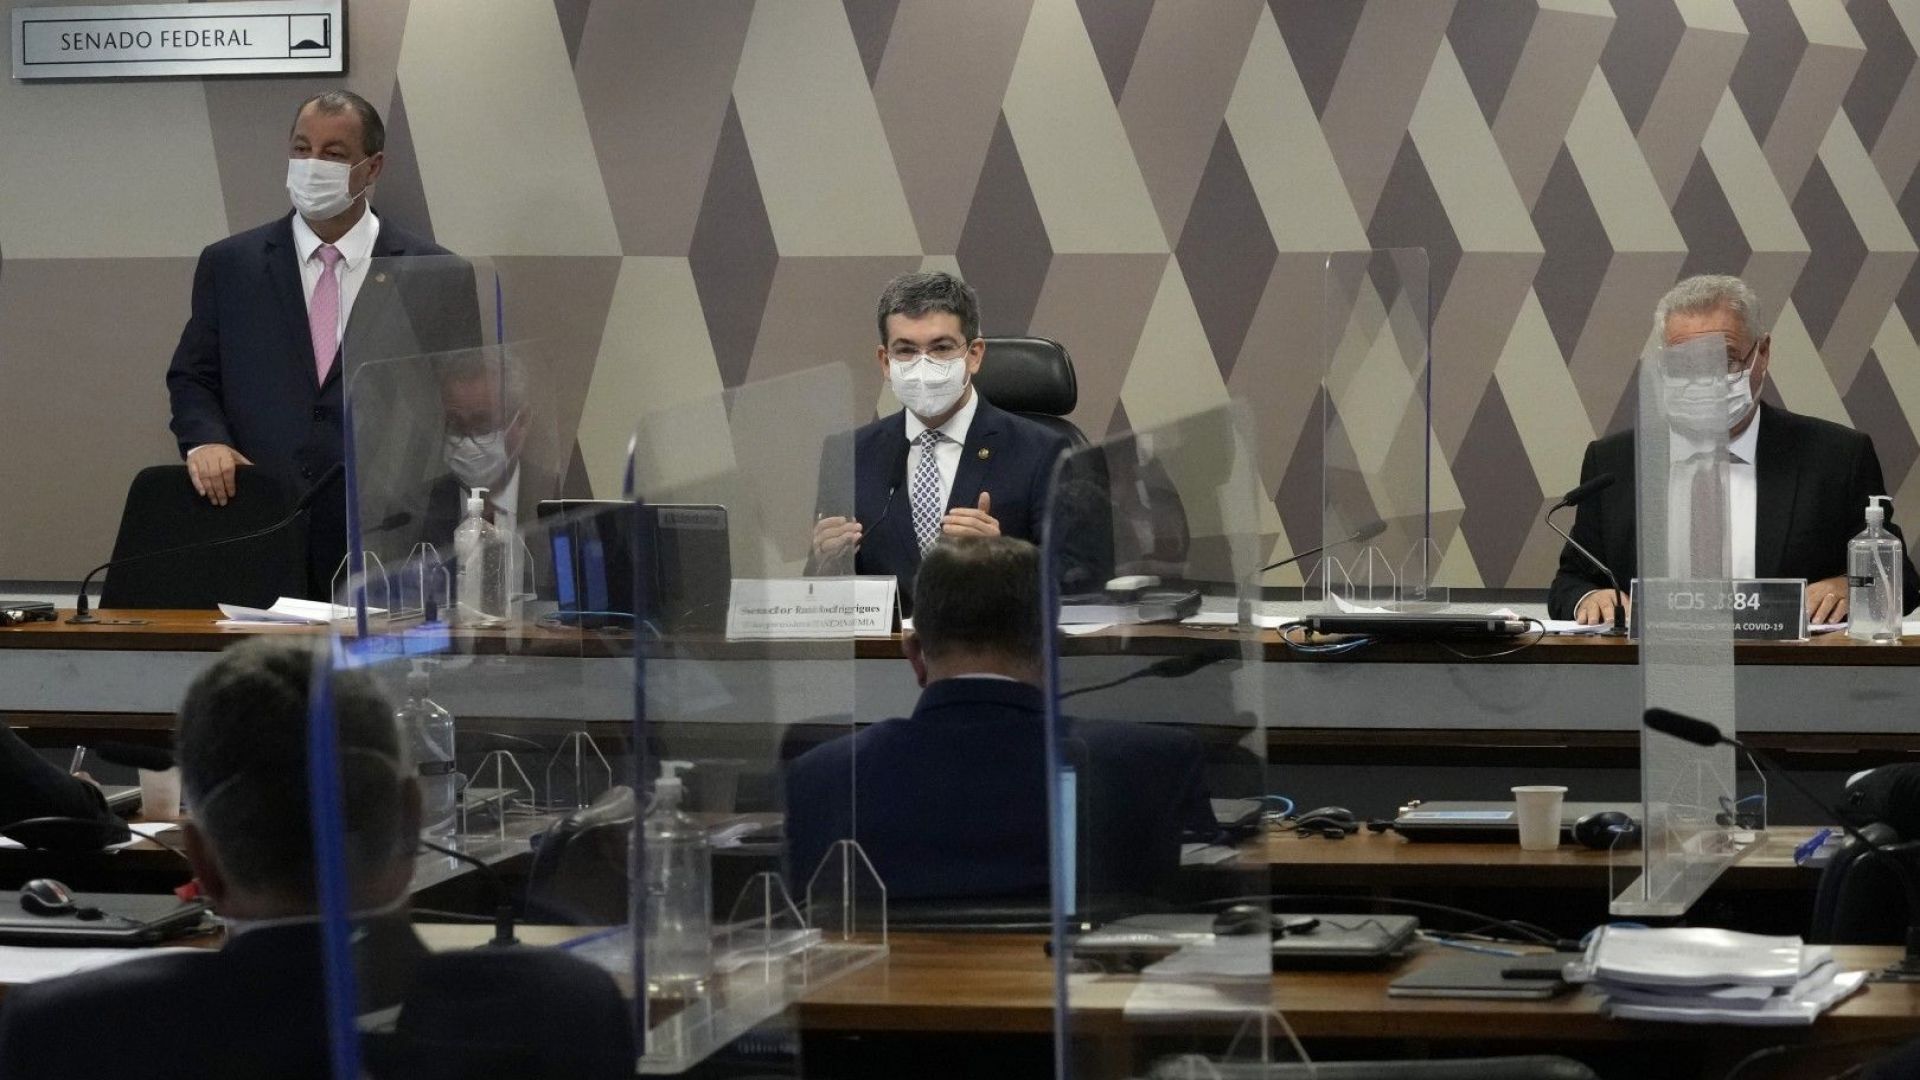 Сенатори препоръчаха обвинения по 9 престъпления срещу Жаир Болсонаро